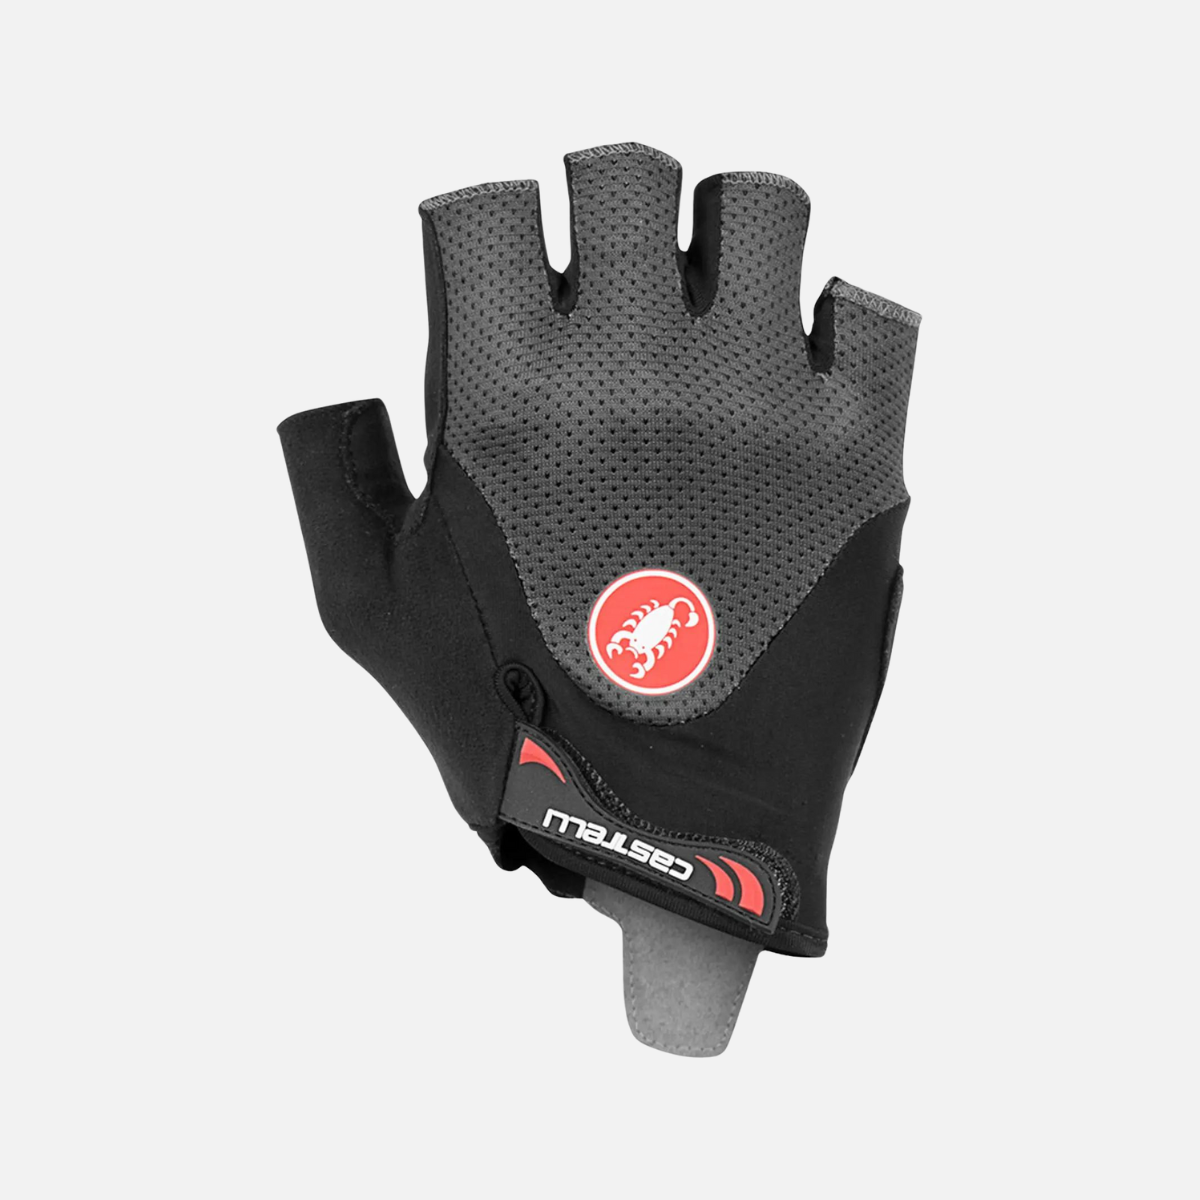 Castelli Arenberg Gel 2 Rosso Corsa Gloves -Dark Grey